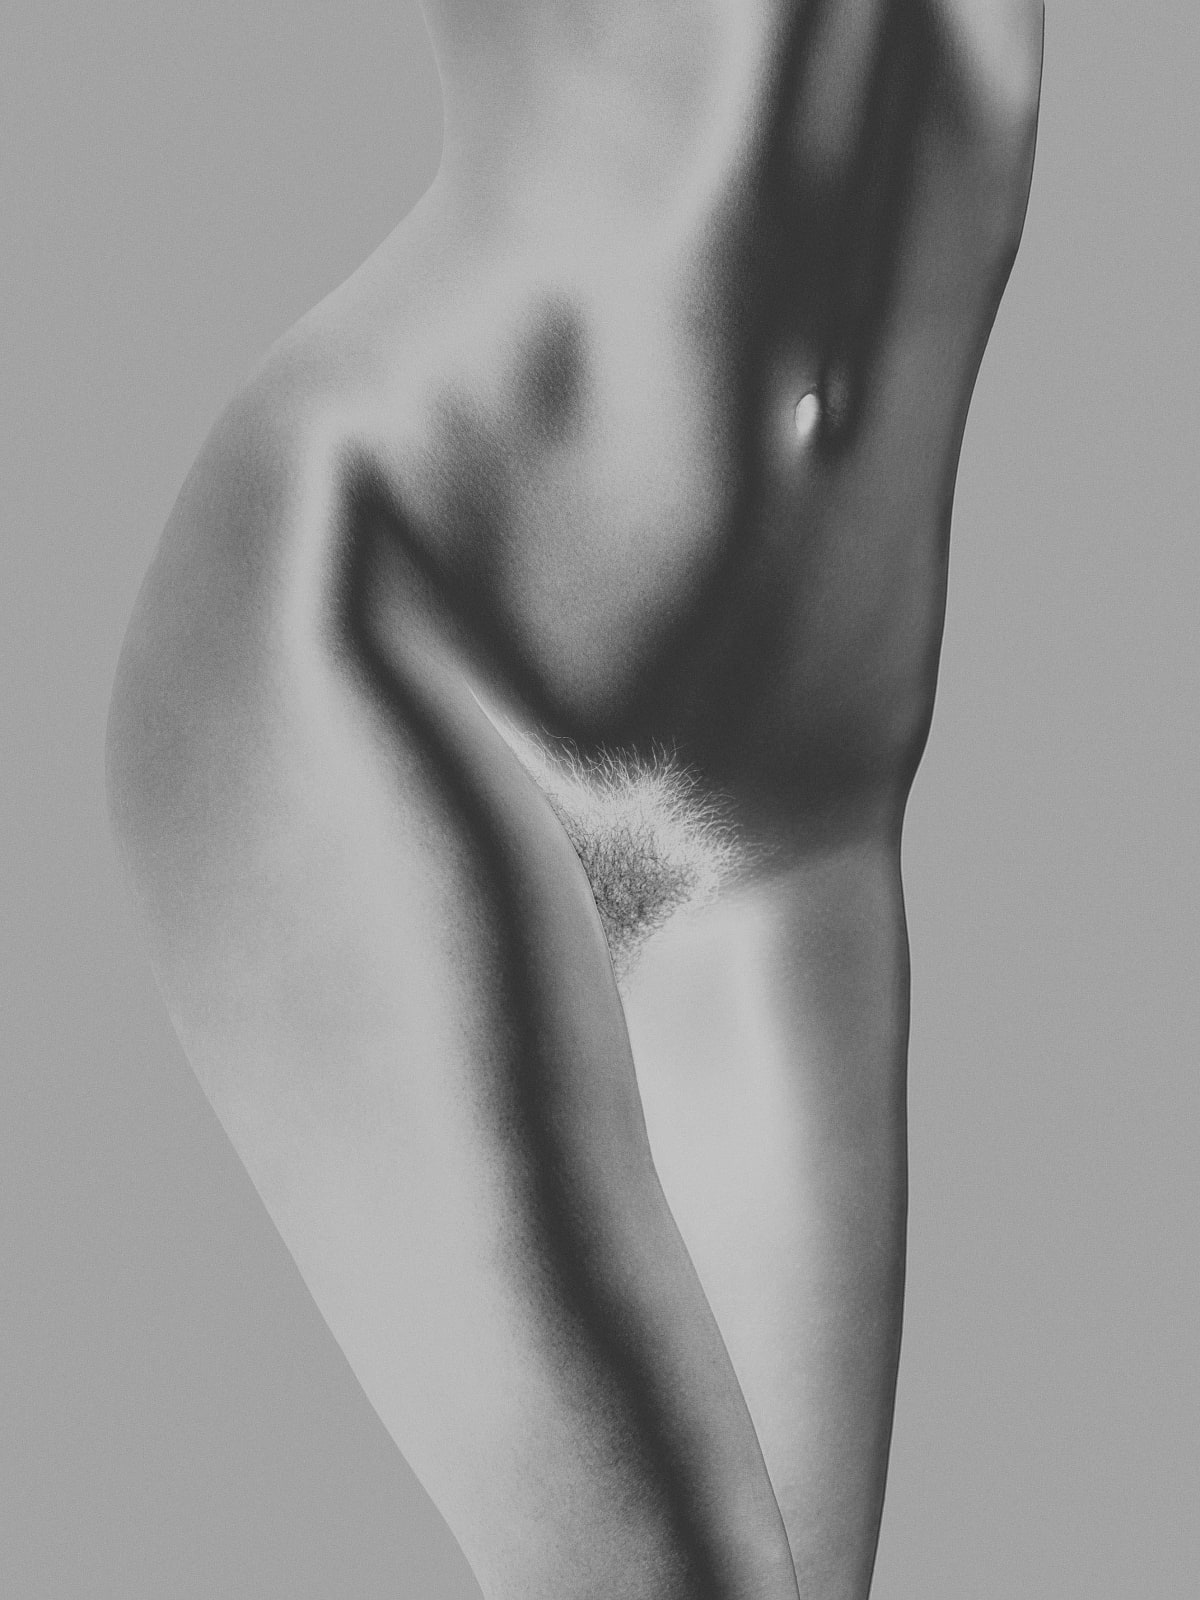 Solarized female torso in contrapposto, by Mona Kuhn